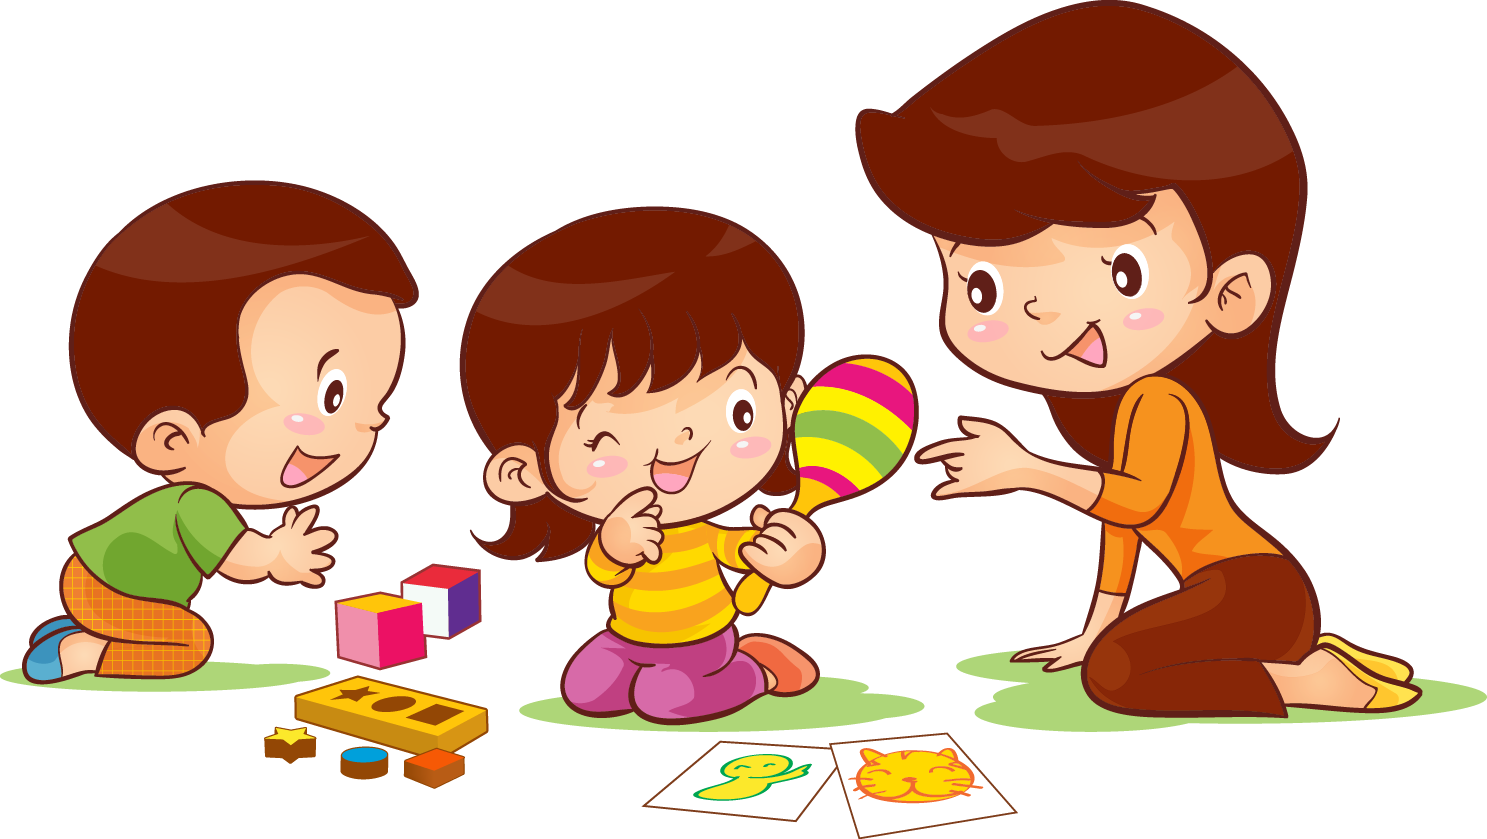 عکس کارتونی بچه های پیش دبستانی و مهد کودکی در حال بازی